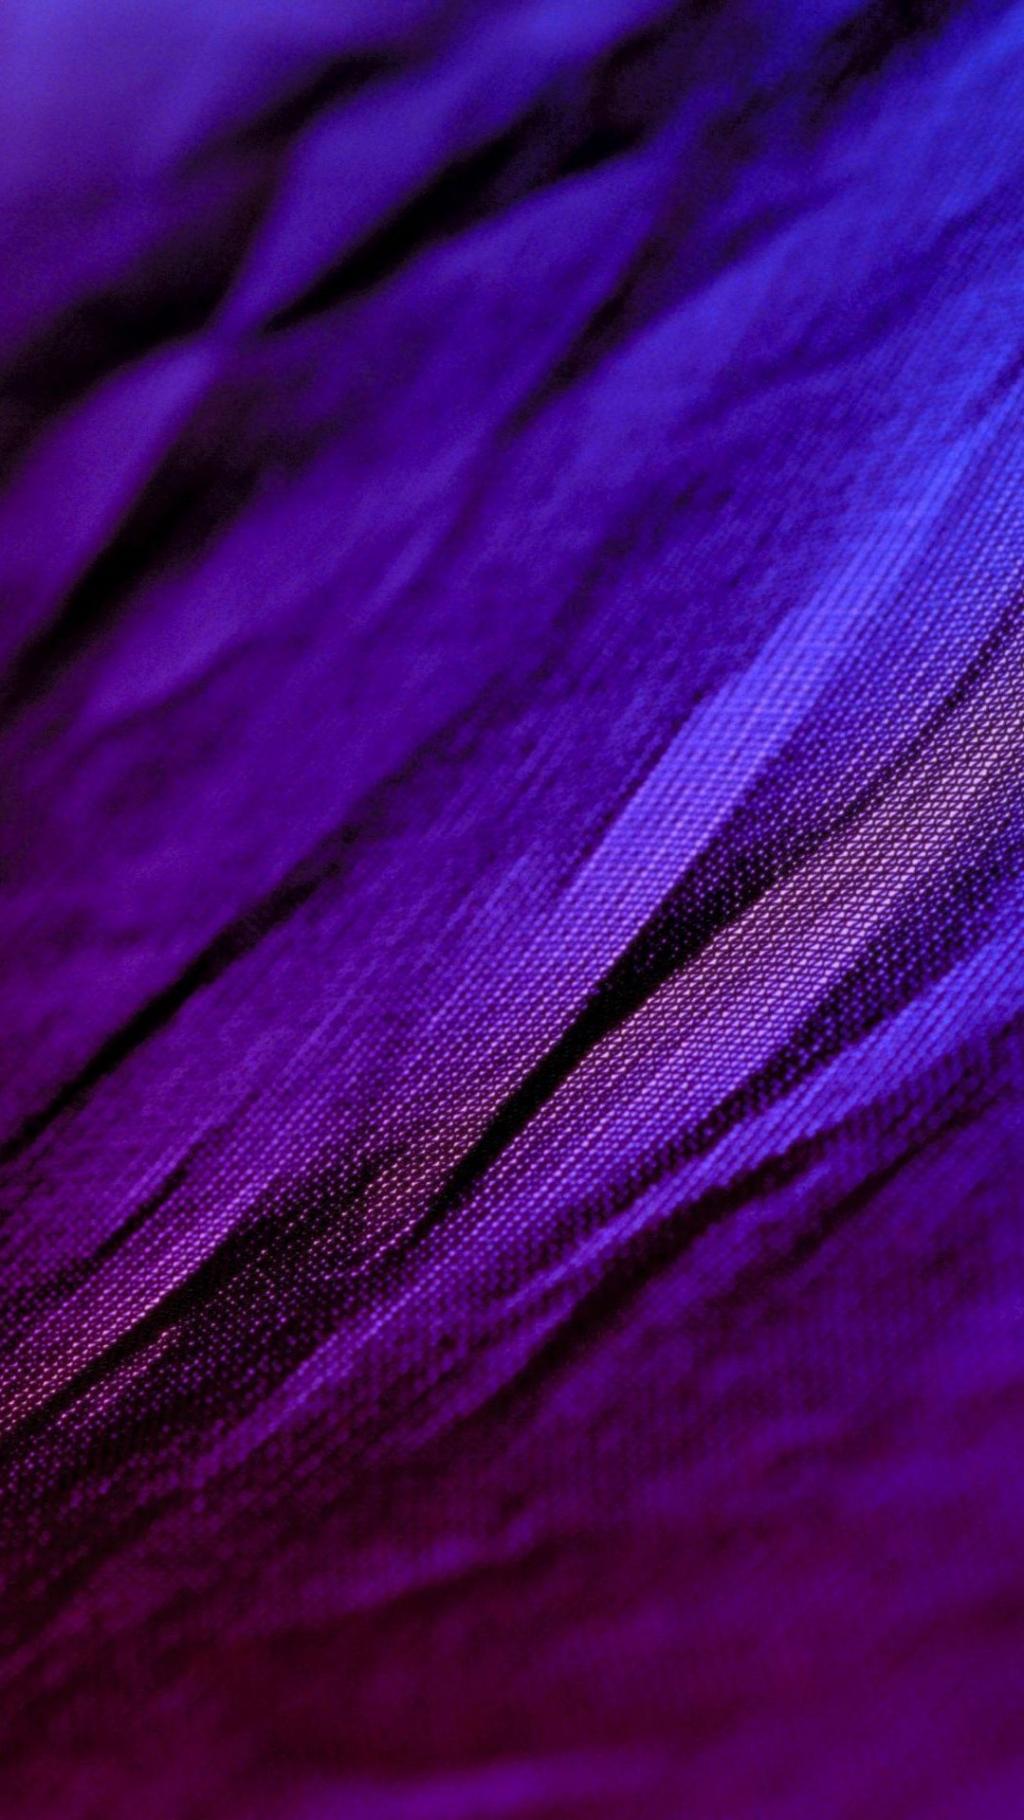 紫色织物纹理特写镜头iPhone 6加上HD墙纸